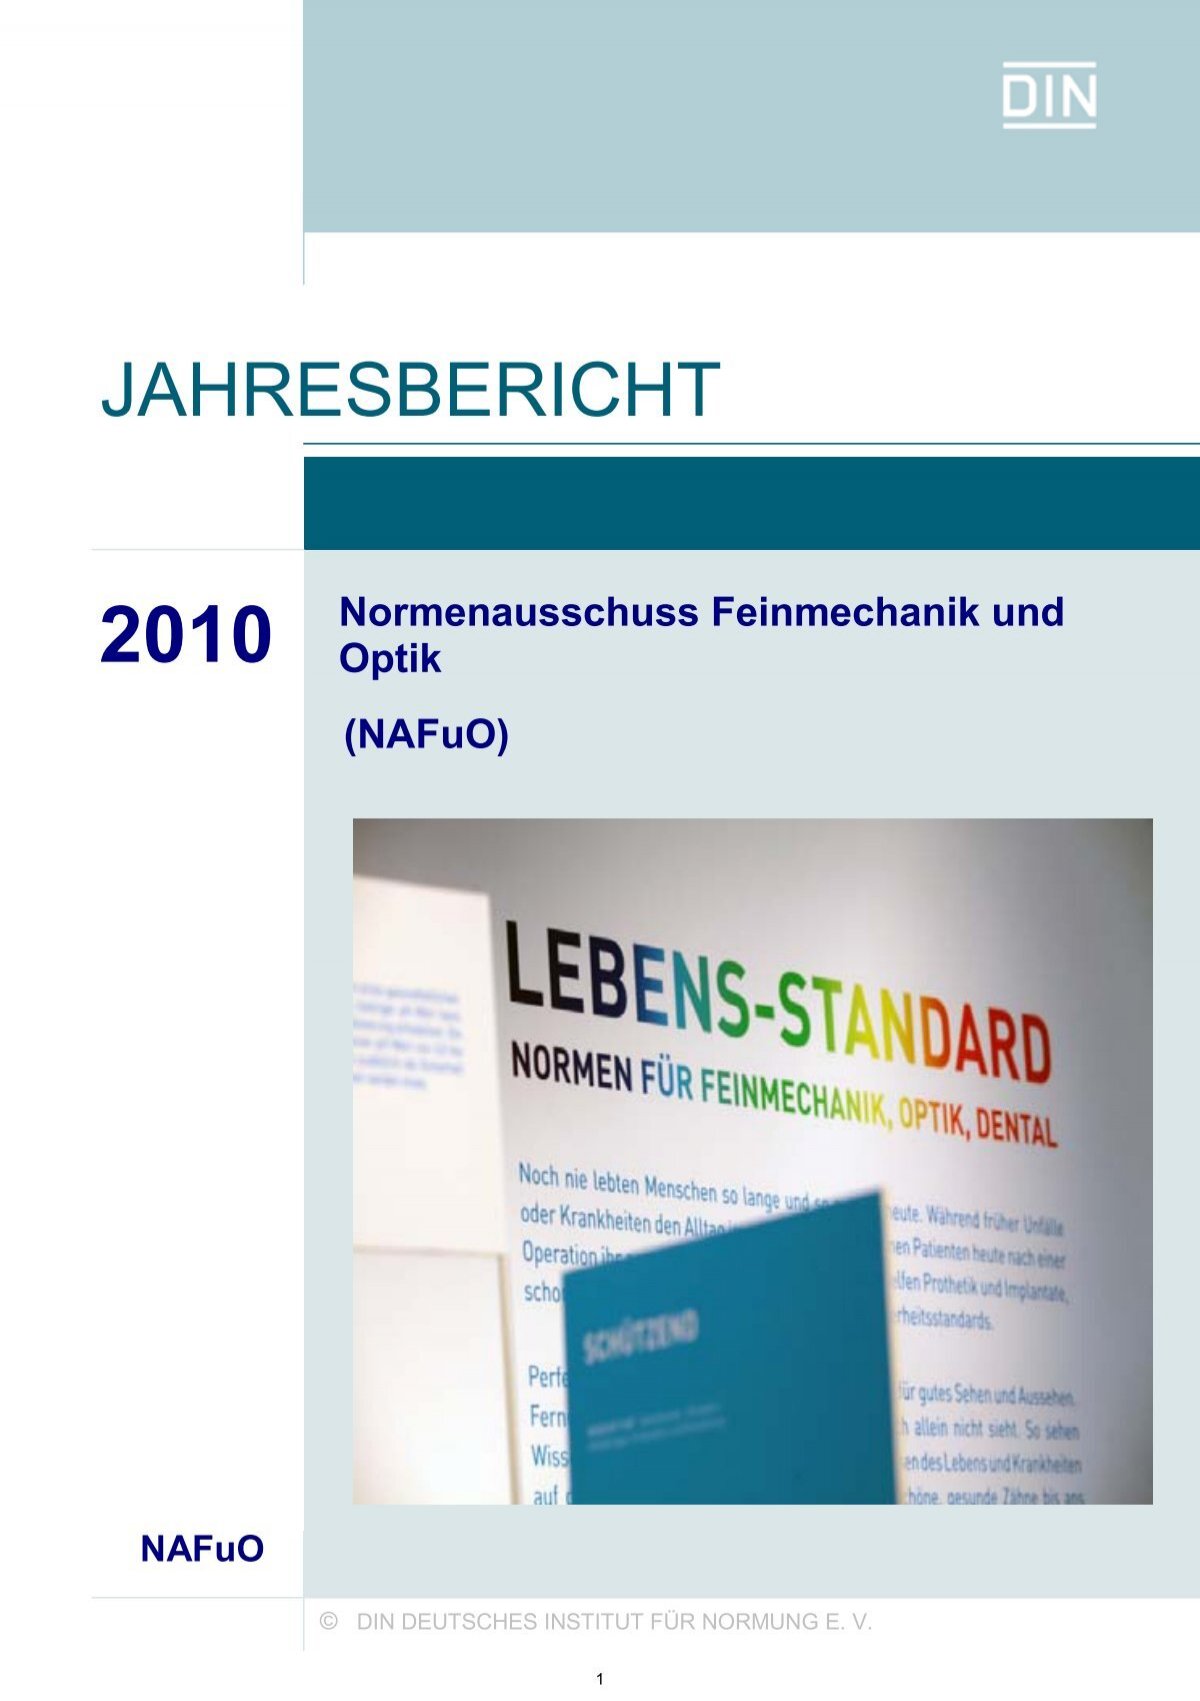 Jahresbericht 2010 - NAFuO - DIN Deutsches Institut für Normung e.V.